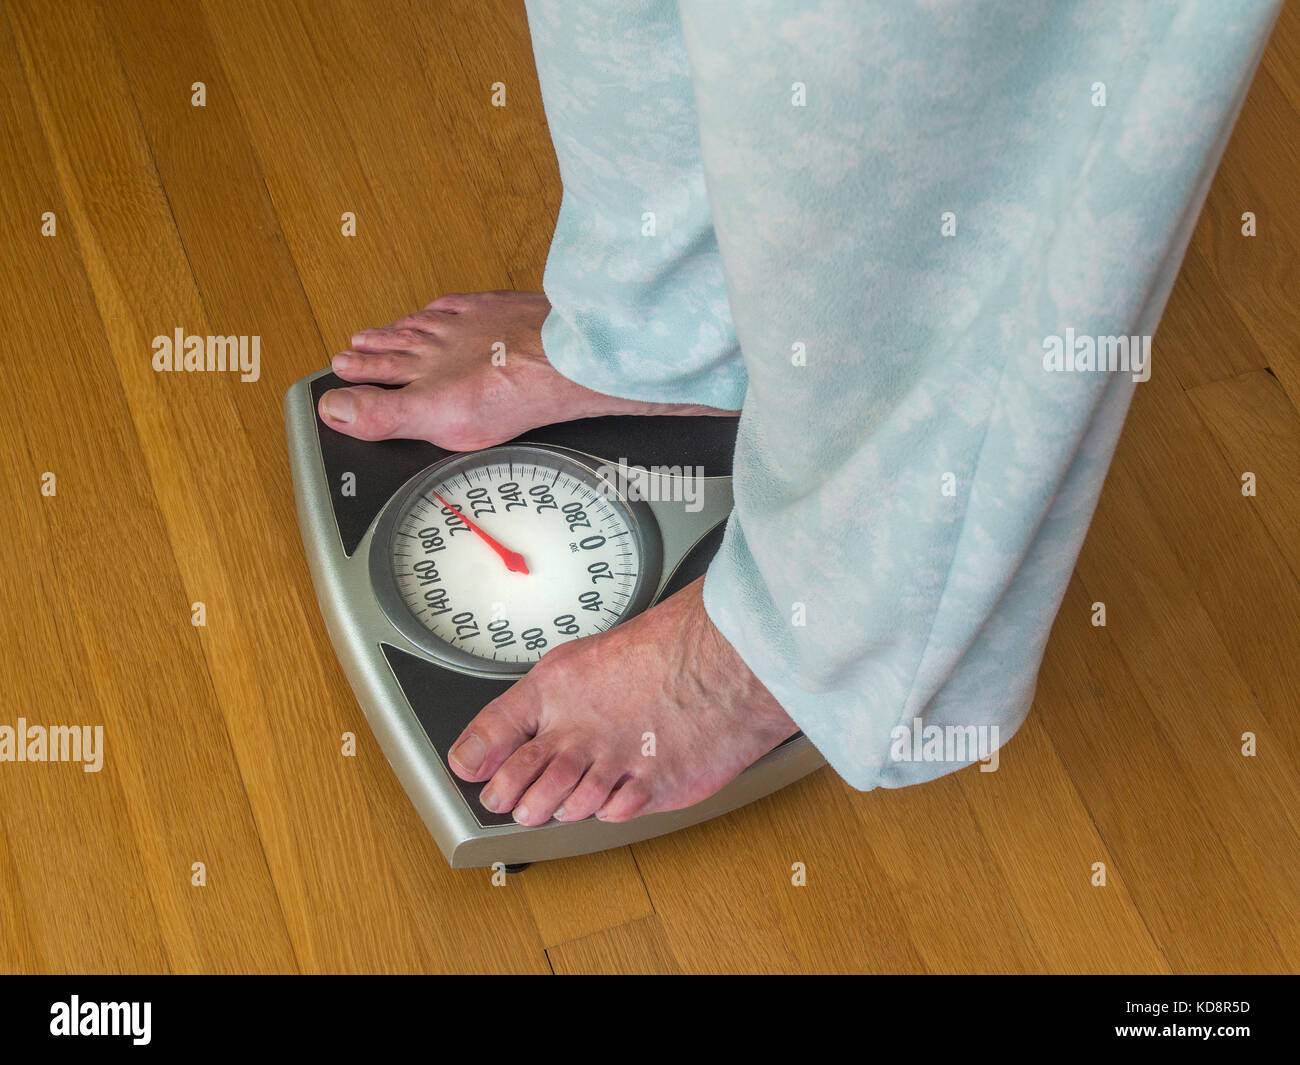 Weight Watcher Scale WW39 Digital Glass Scale by Conair Stock Photo - Alamy